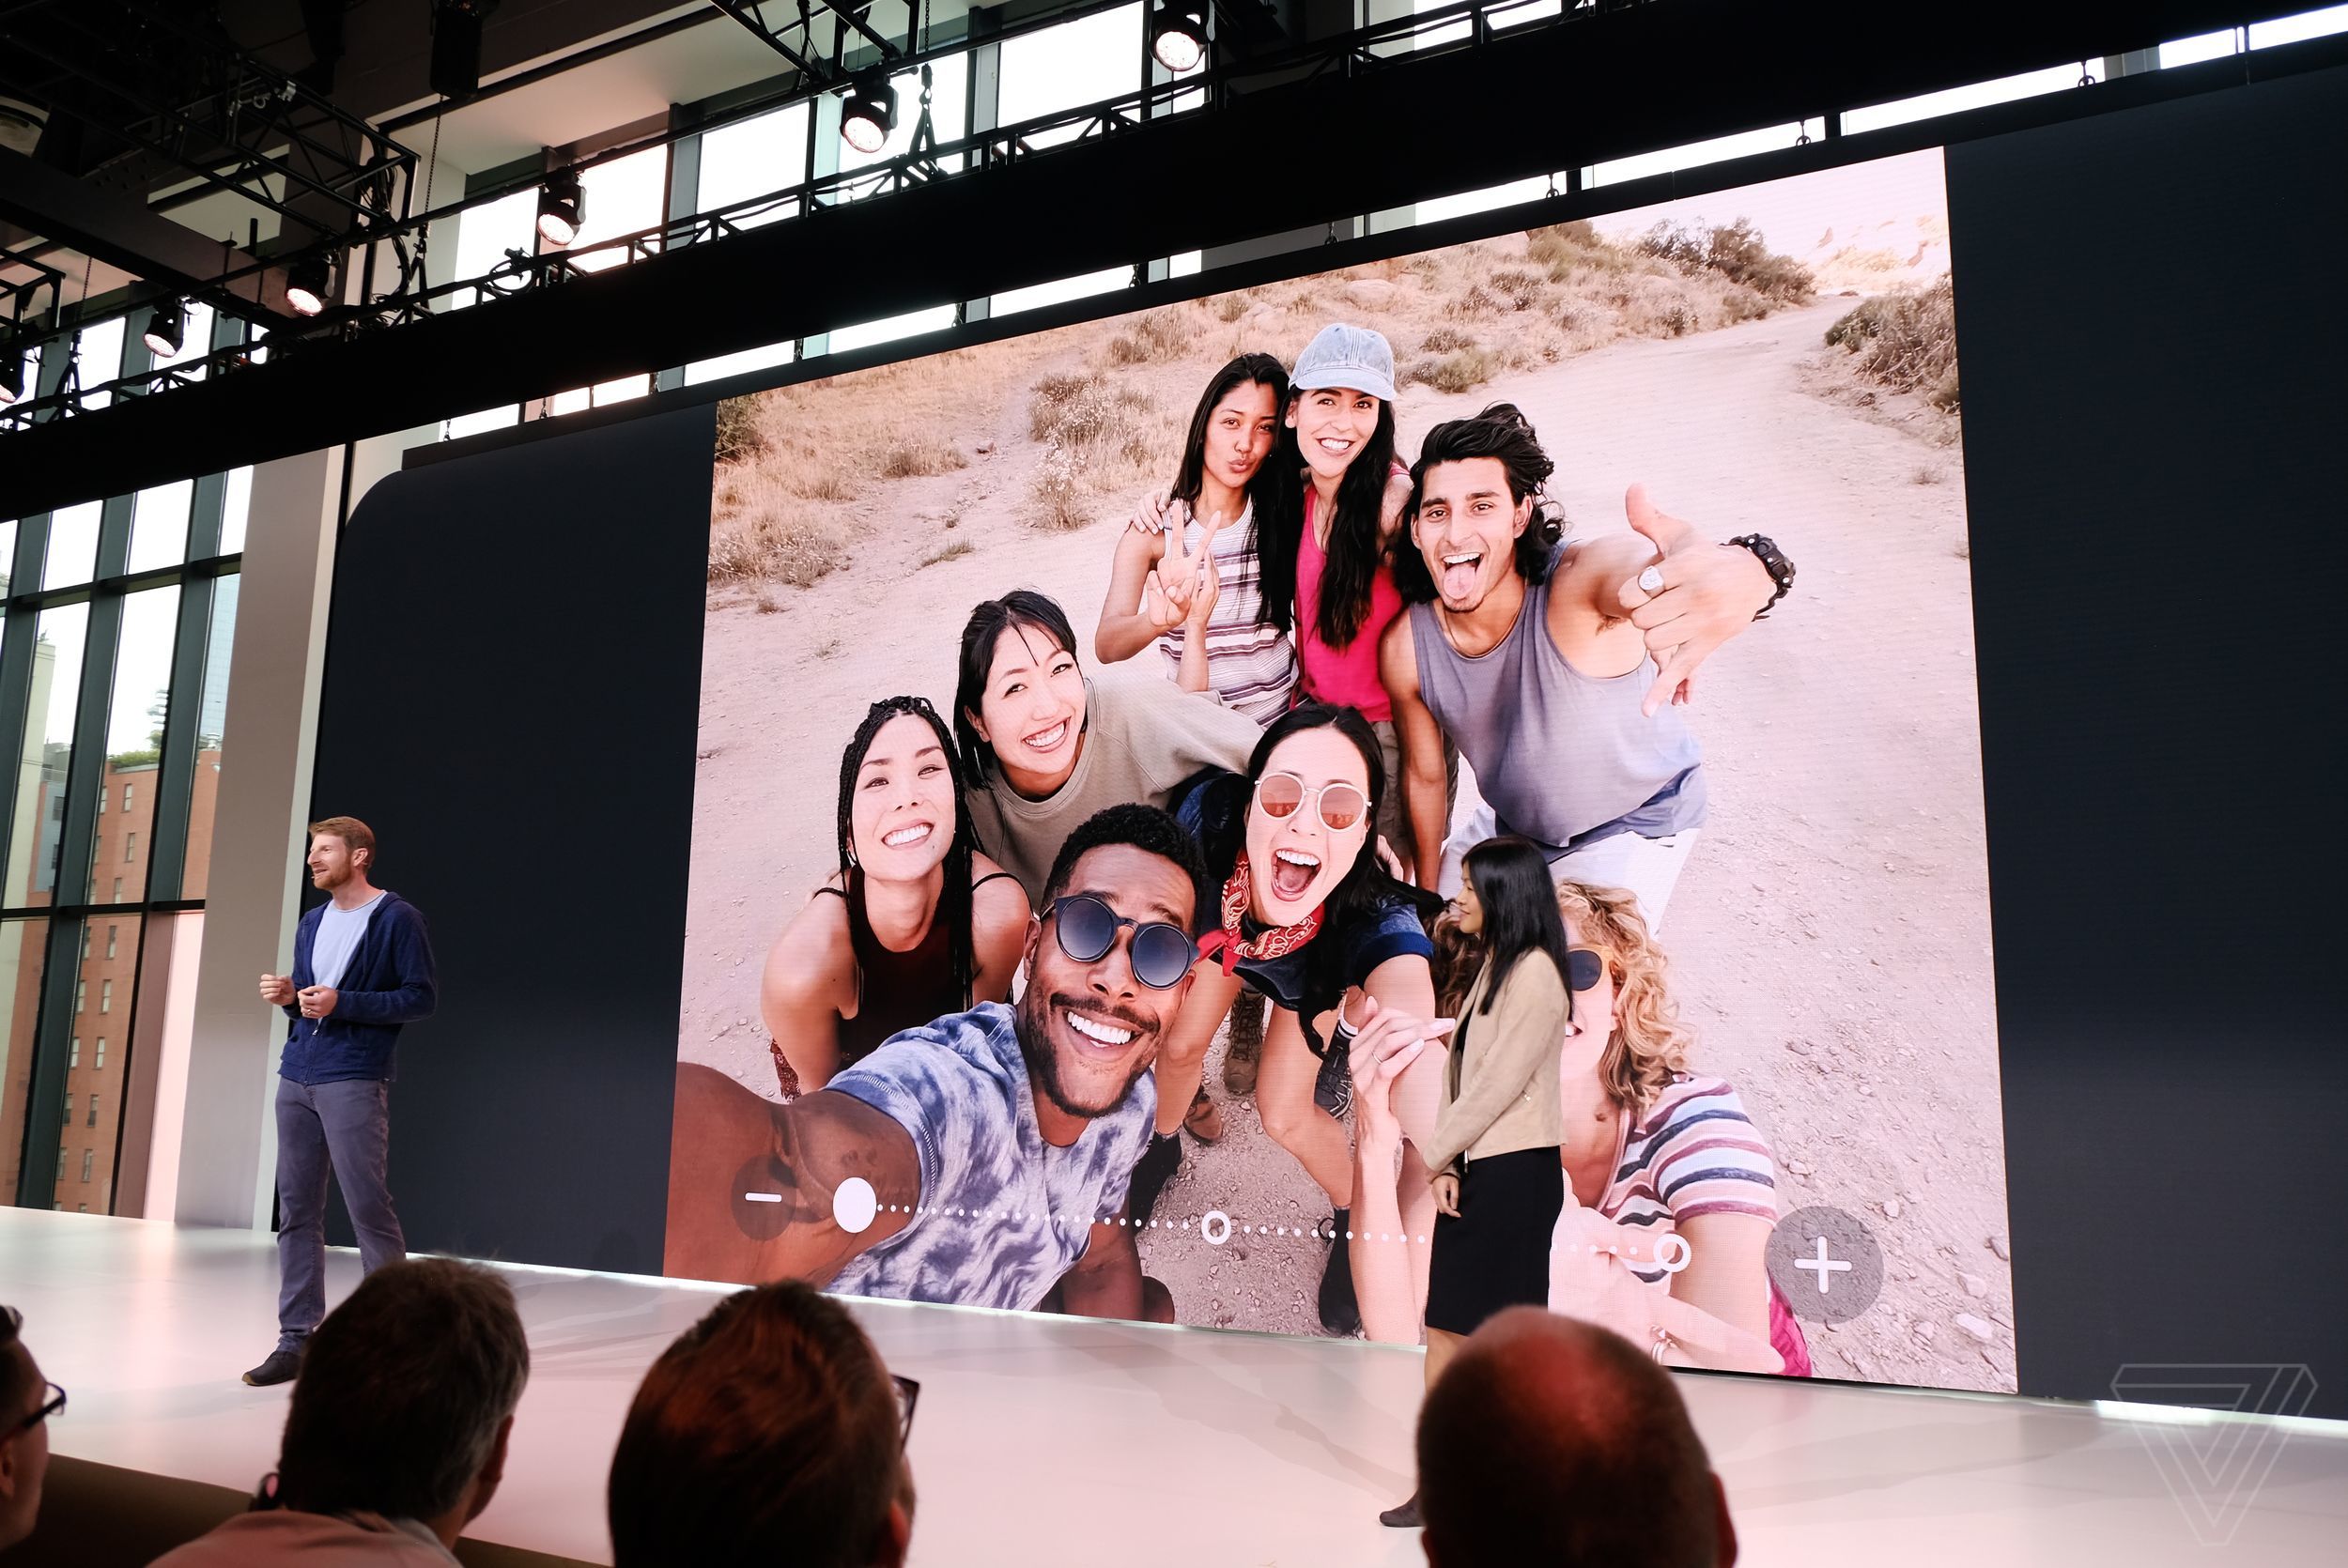 Google Pixel 3 và
Pixel 3 XL chính thức được ra mắt với Snapdragon 845, 4GB
RAM, camera ngon hơn